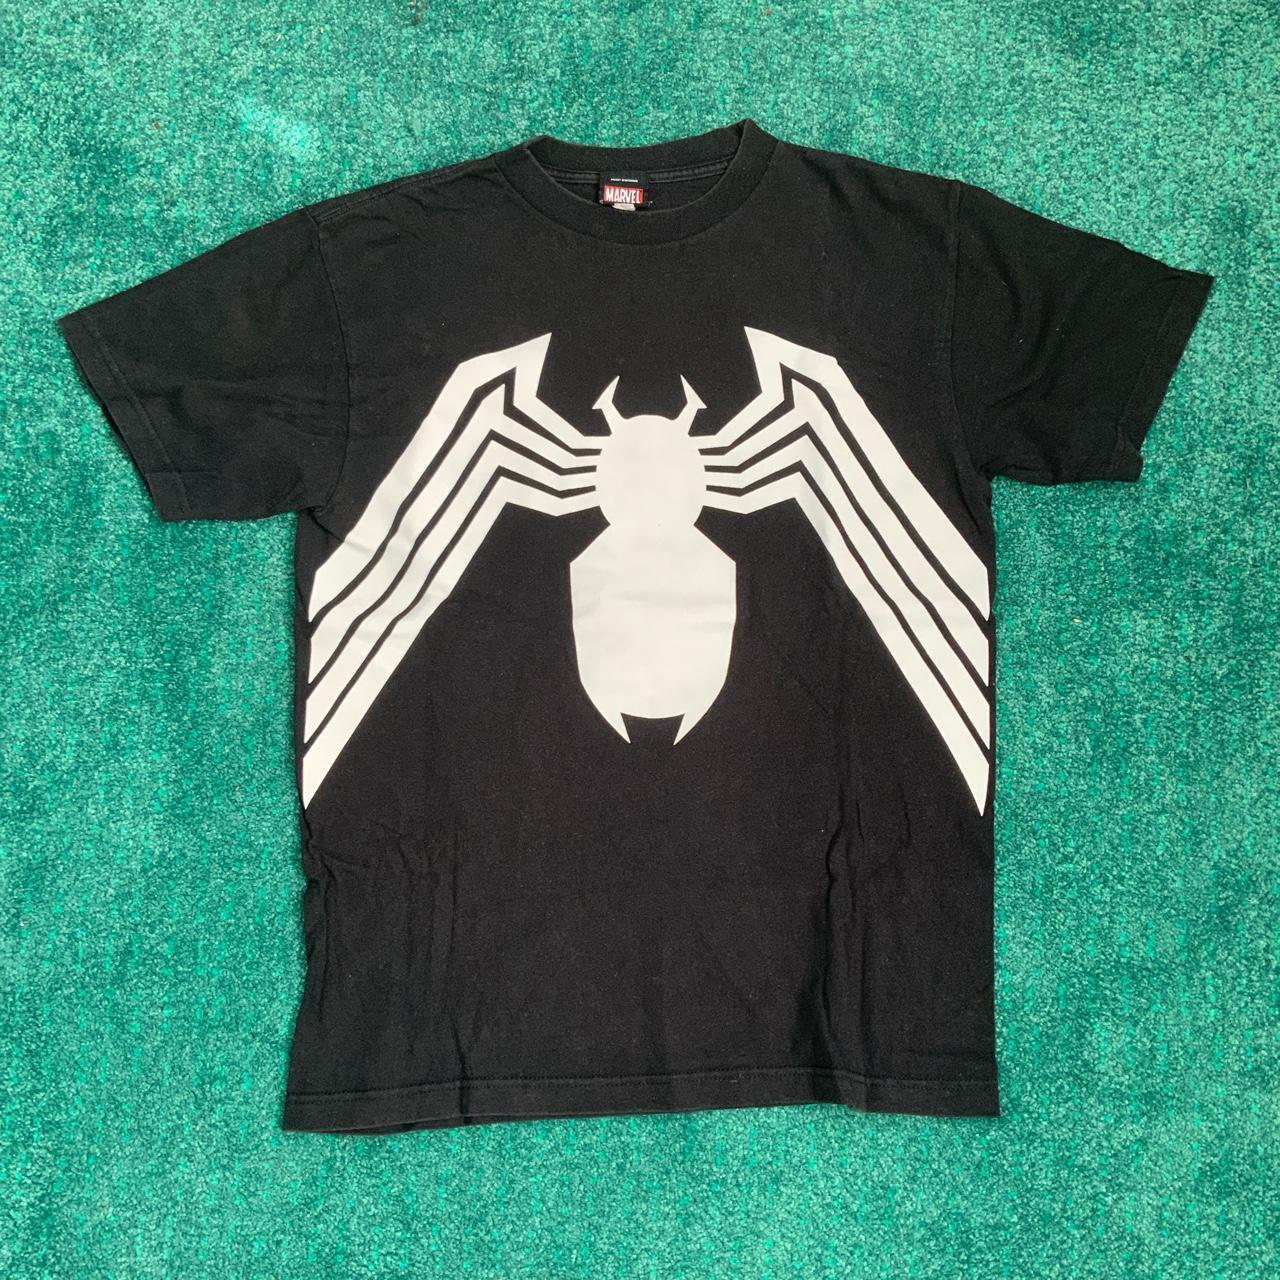 Spider-Man, Venom front and - Depop T-shirt... print back